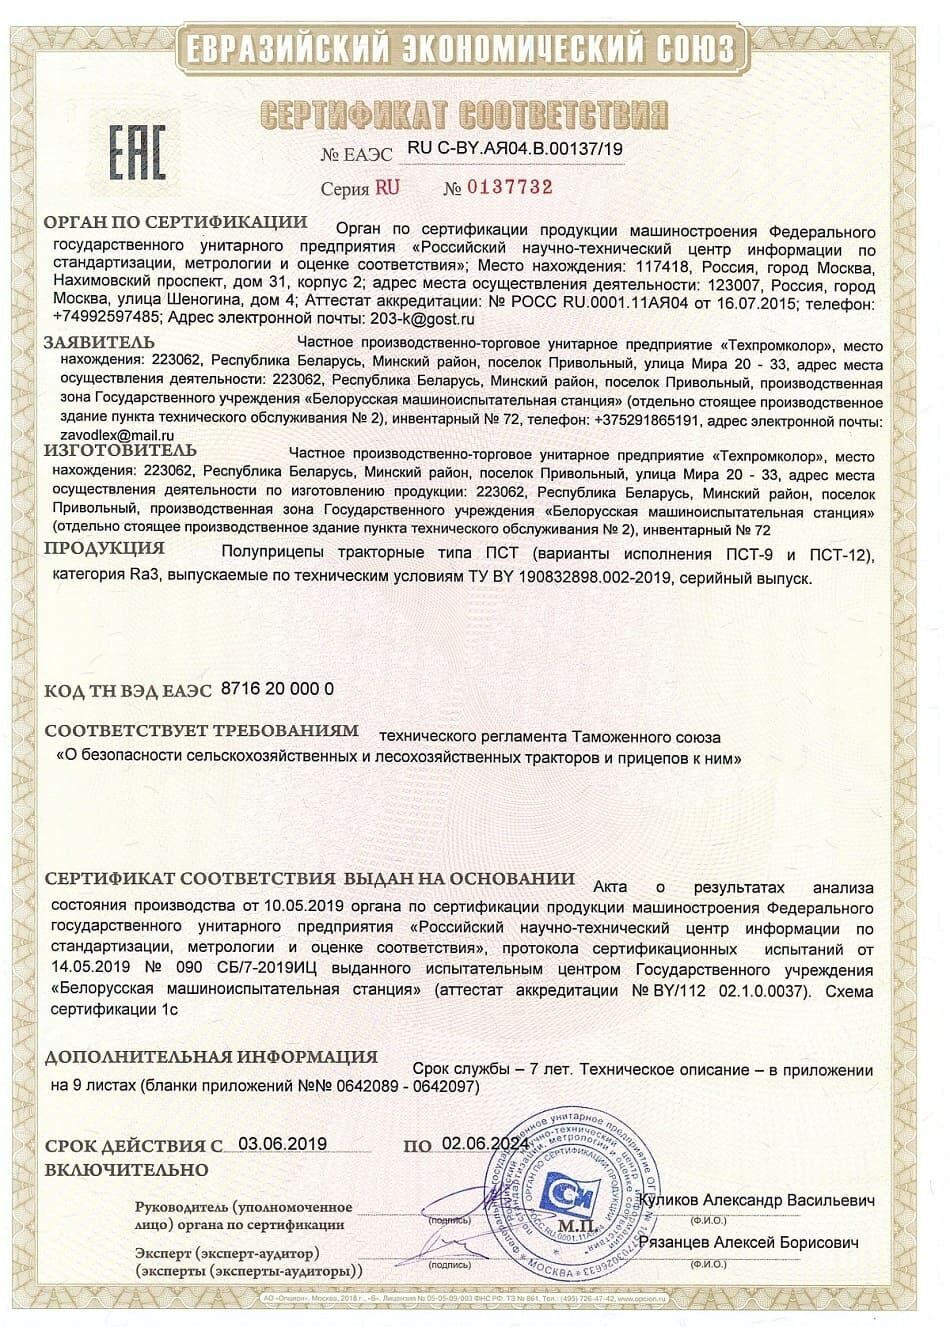 Сертификат на полупицепы ПСТ